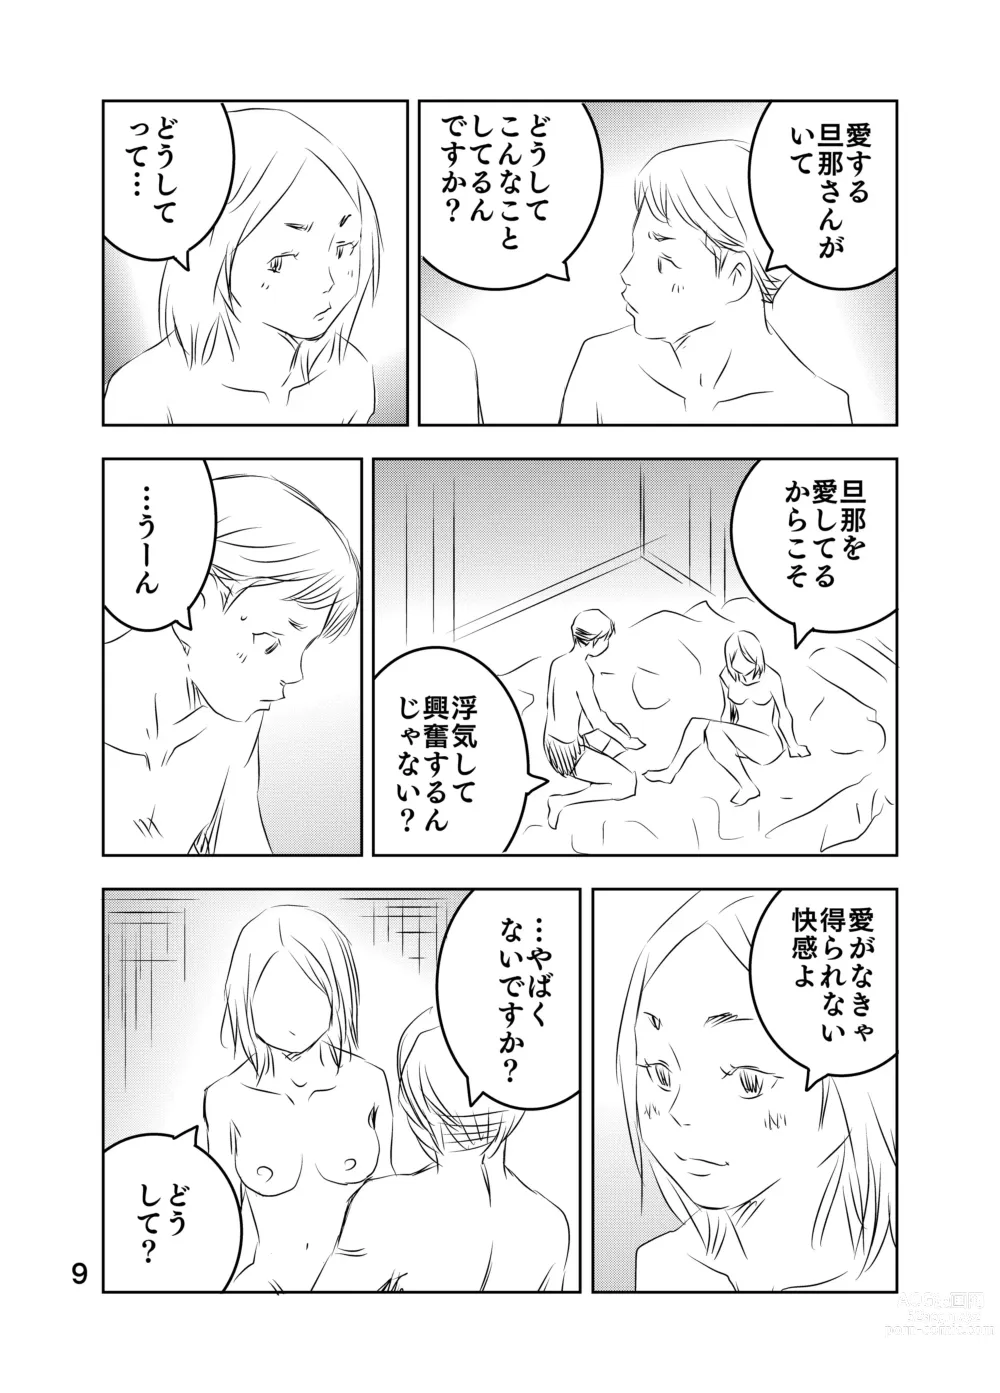 Page 62 of doujinshi Zurui Hito-tachi